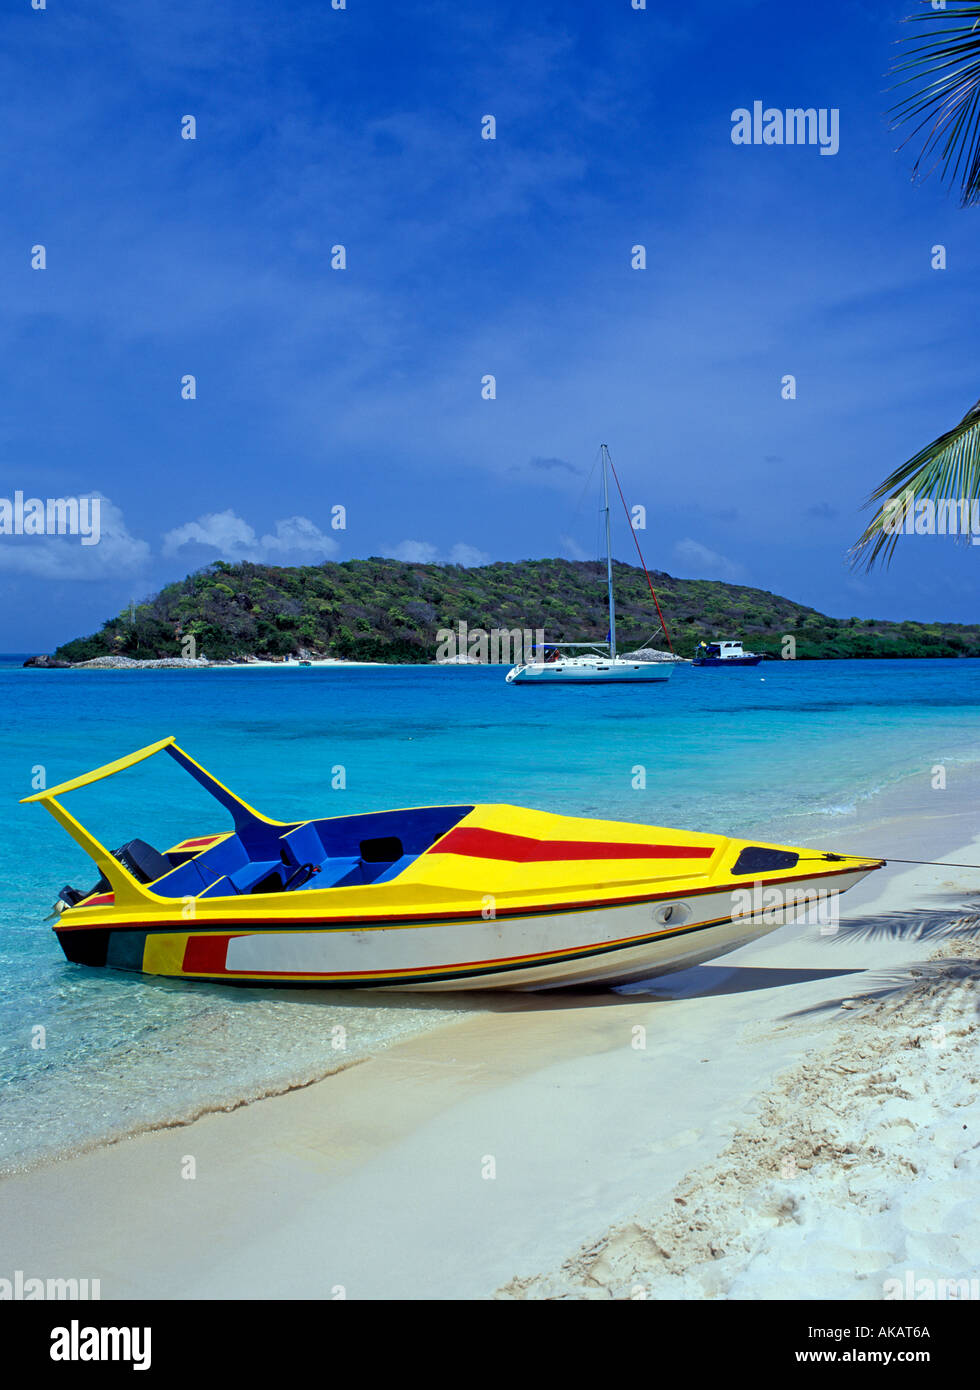 Vitesse de couleur vive sur la plage bateau Grenadines Caraïbes Banque D'Images